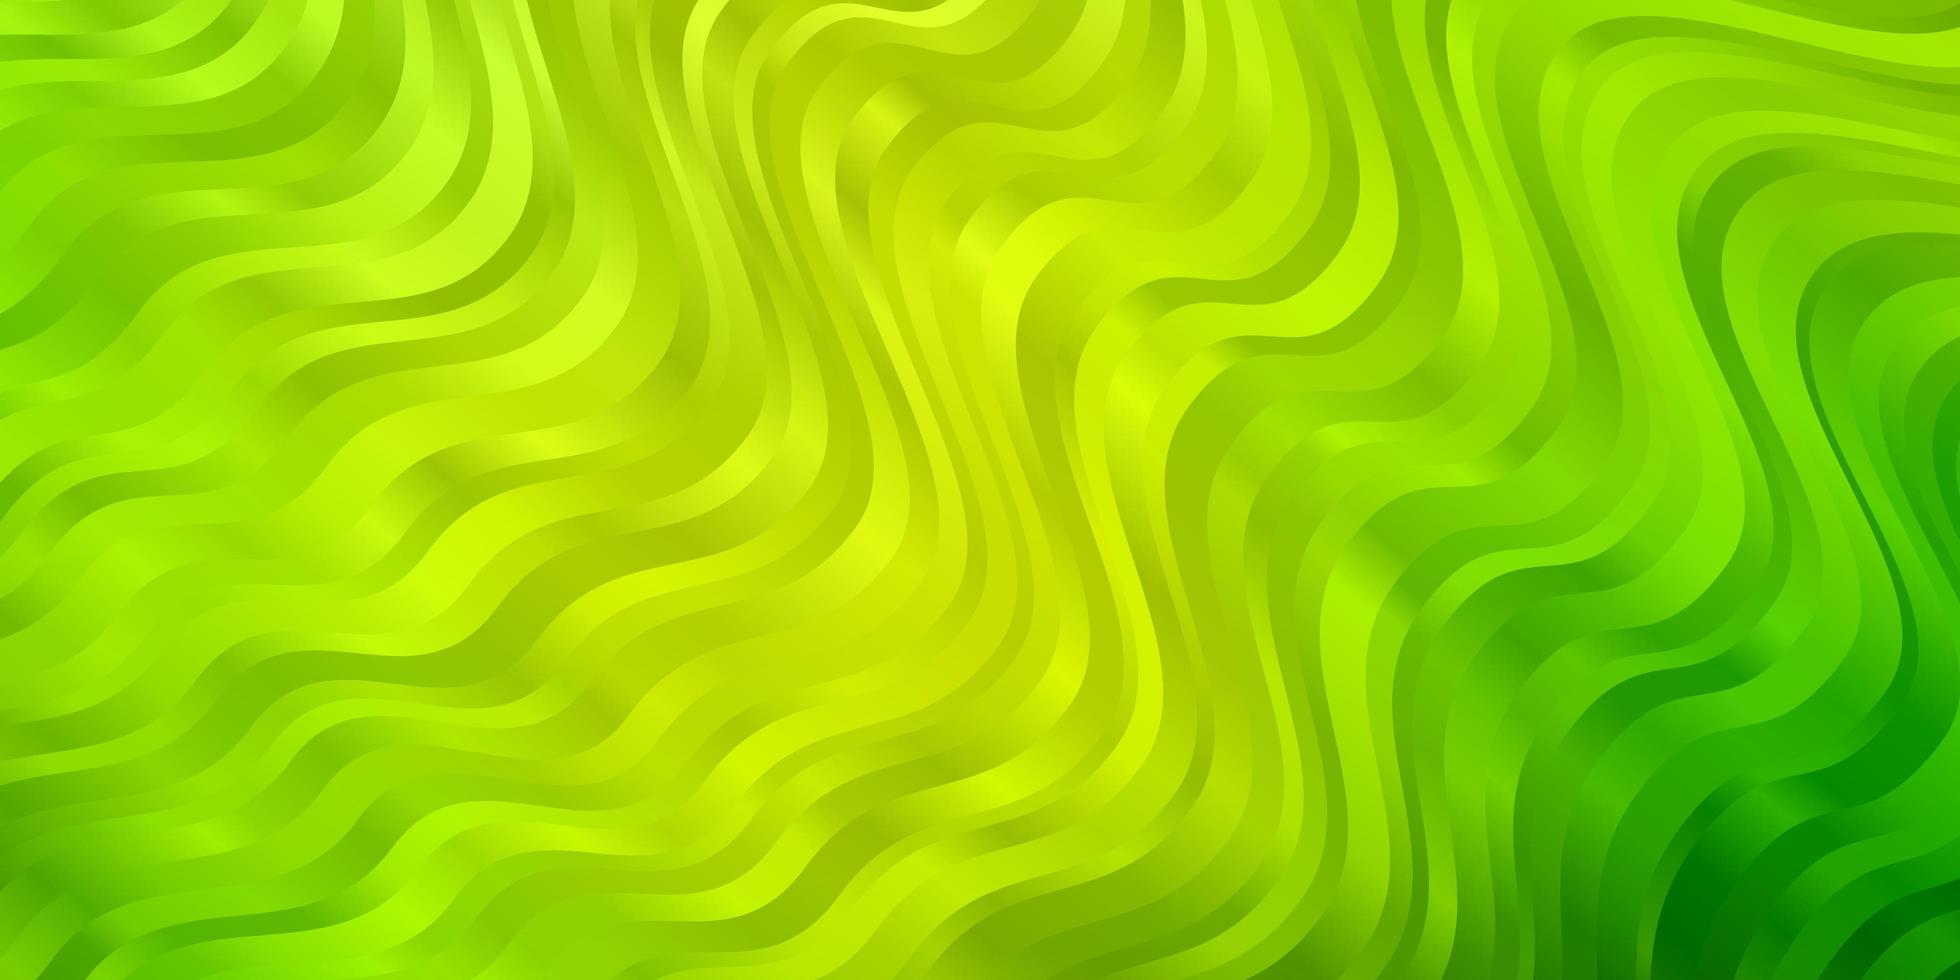 lichtgroen, geel vectorpatroon met wrange lijnen. vector